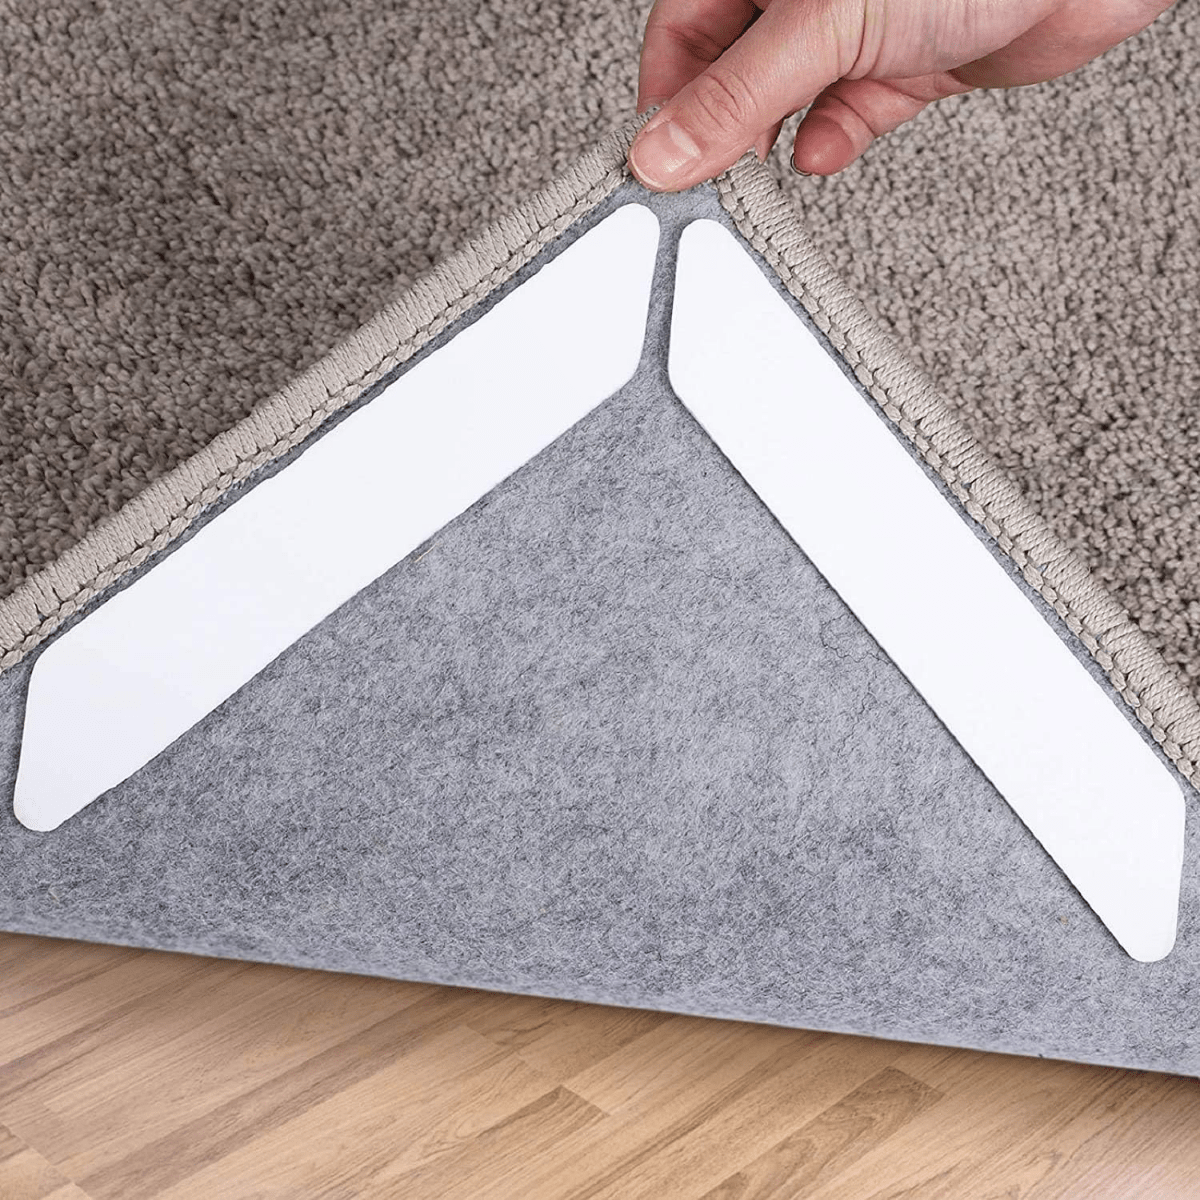 Double Sided Carpet Tape for Hardwood Floors Tile Floors Laminate